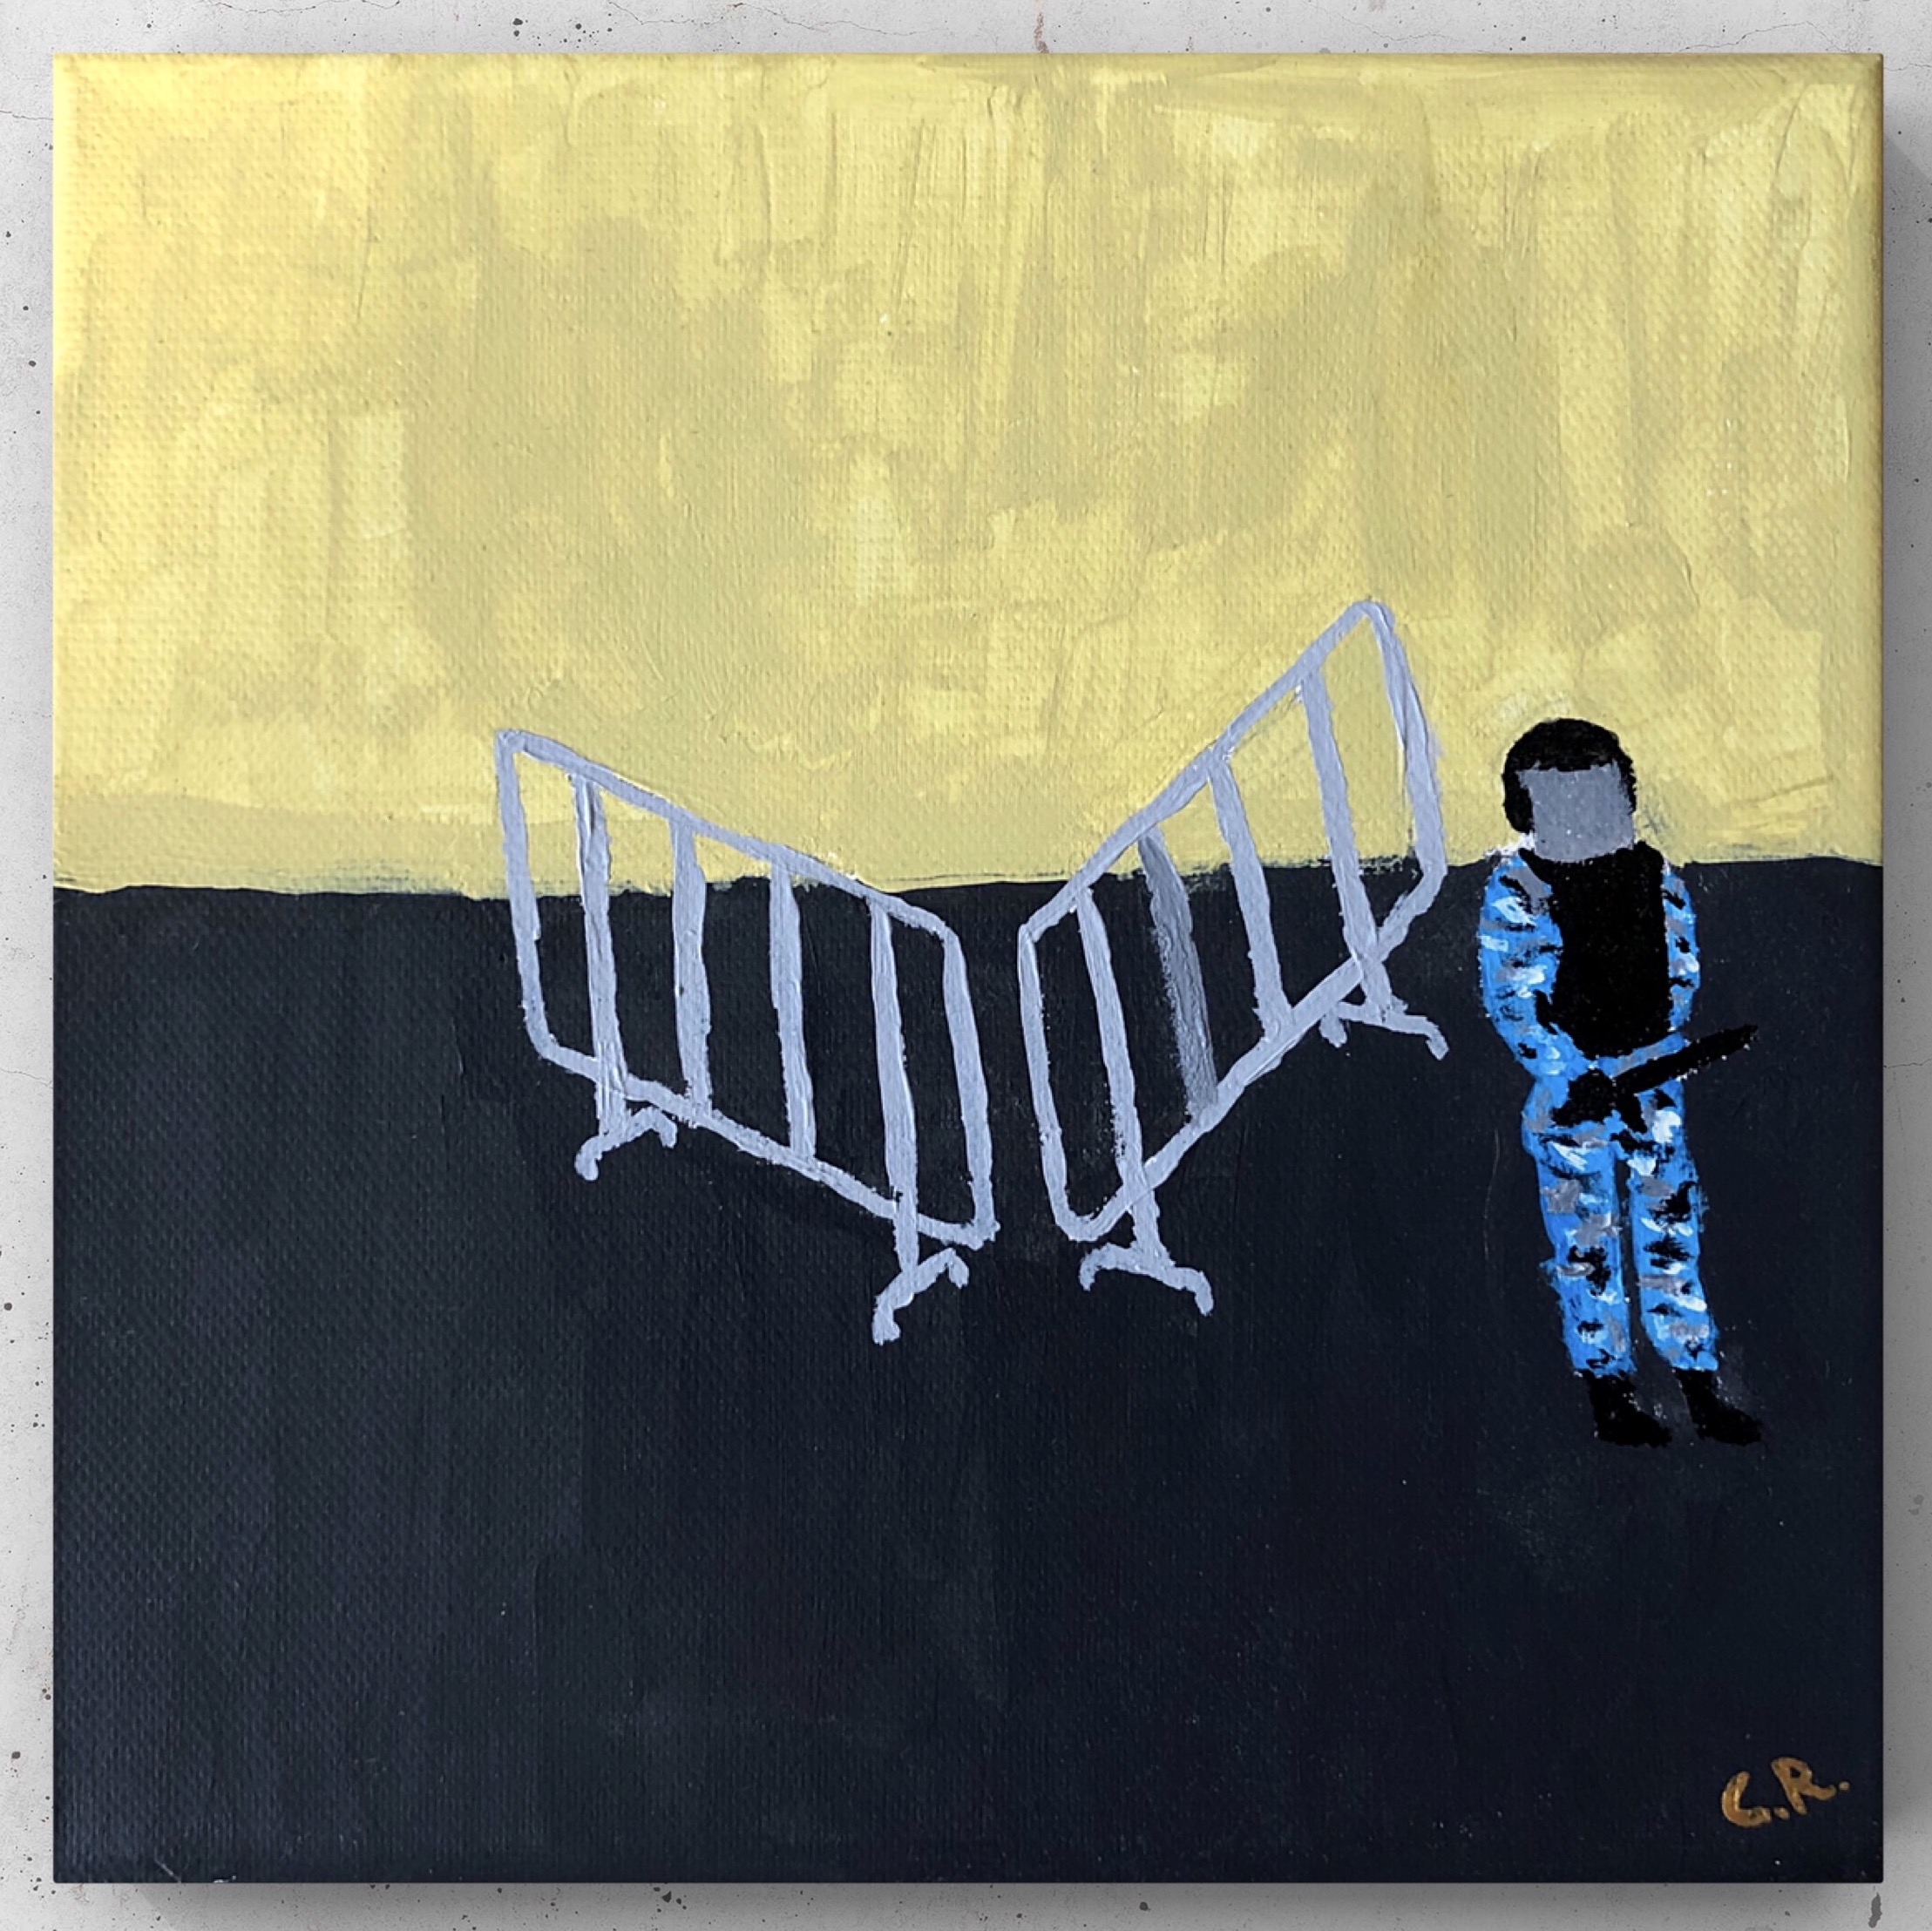 Картина современного российского художника Colonel Royce (Василий Круглов) в стиле концептуализм, поп-арт, минимализм. Цвета: жёлтый, чёрный, серый, синий. Сюжет: полицейское государство, насилие, ОМОН, протесты, коррупция, заграждения, заборы. Можно купить